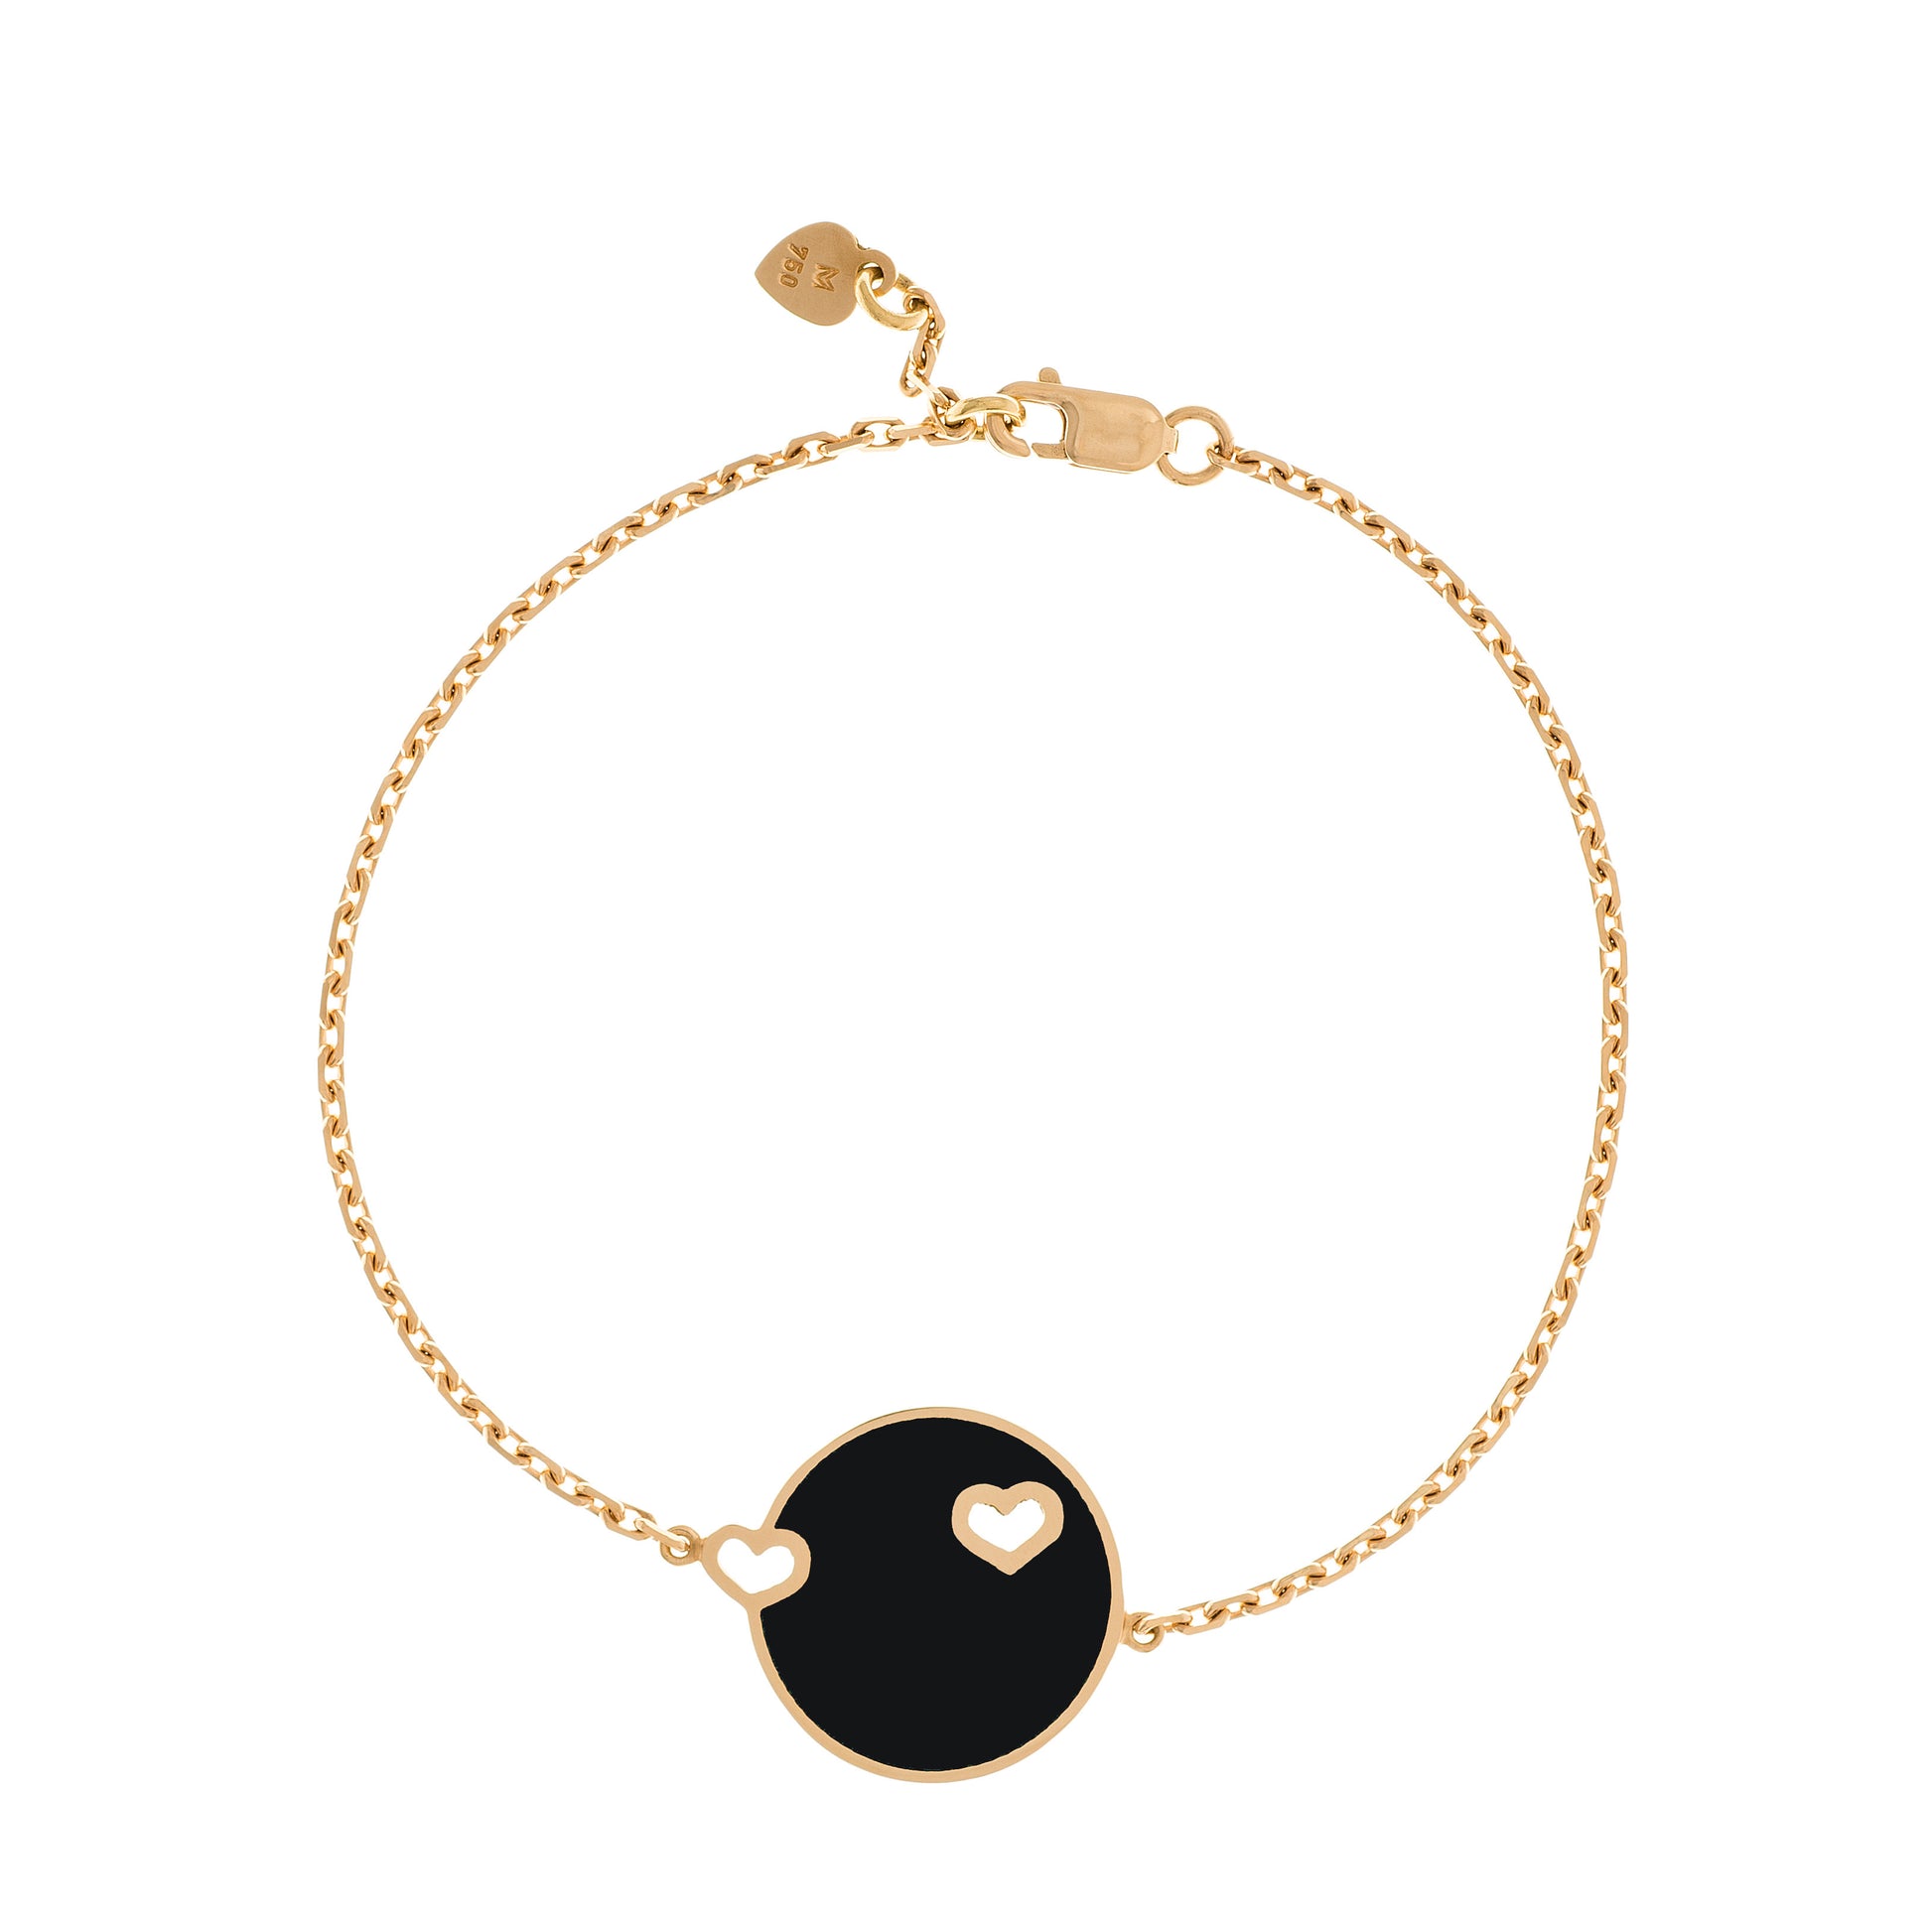 MORA bijoux bracelet Duo Coeur émaillé noir reversible en or jaune 18 carats, diamètre de la pièce 17mm, longueur de la chaîne 16 cm avec petit coeur en or jaune 18 carats soudé sur le fermoir.